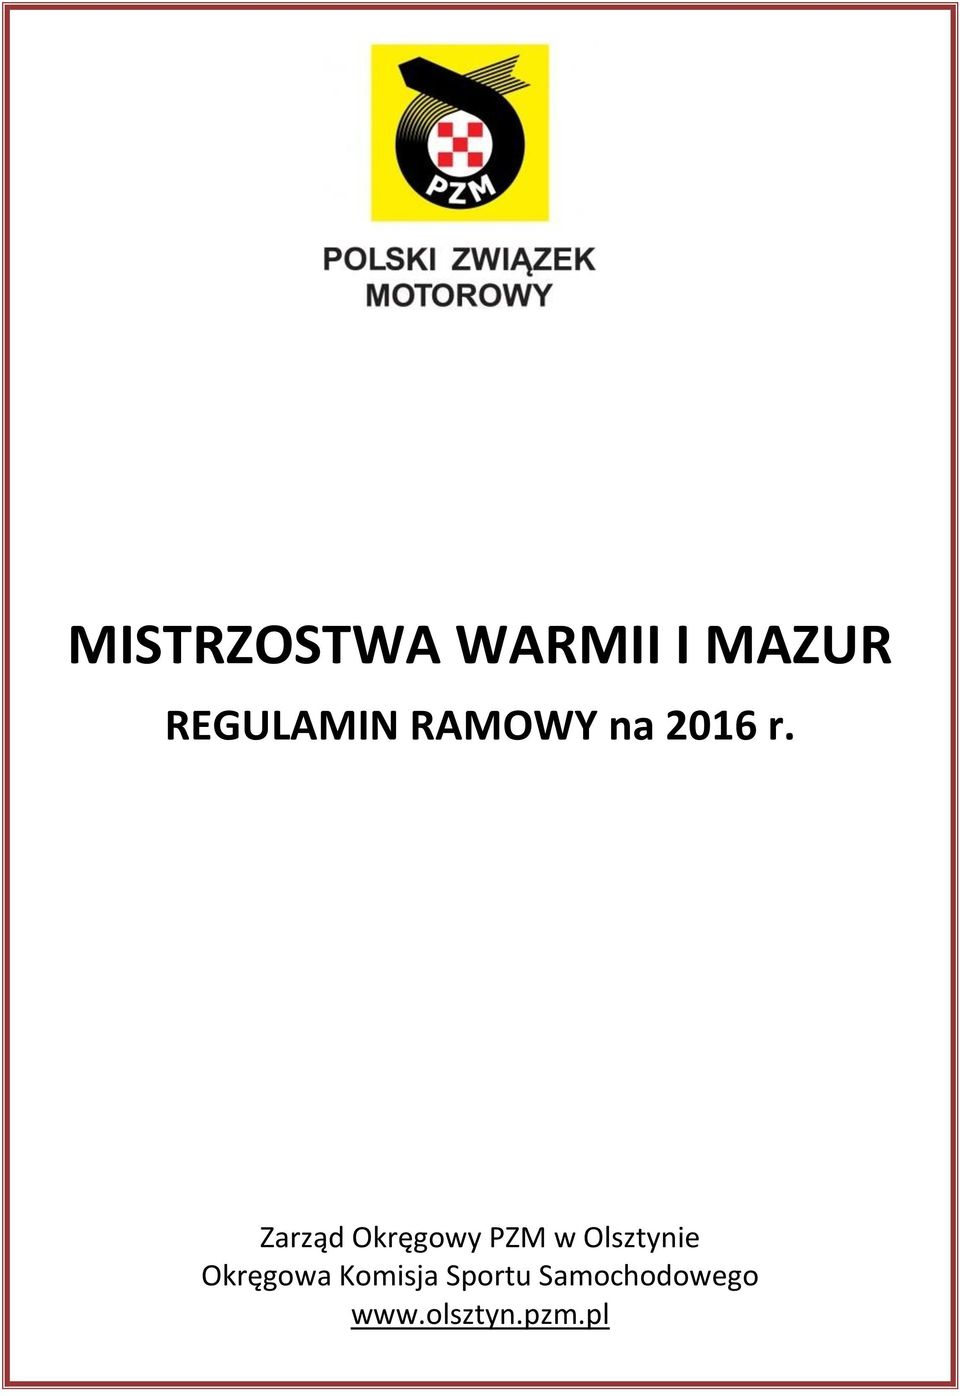 Zarząd Okręgowy PZM w Olsztynie